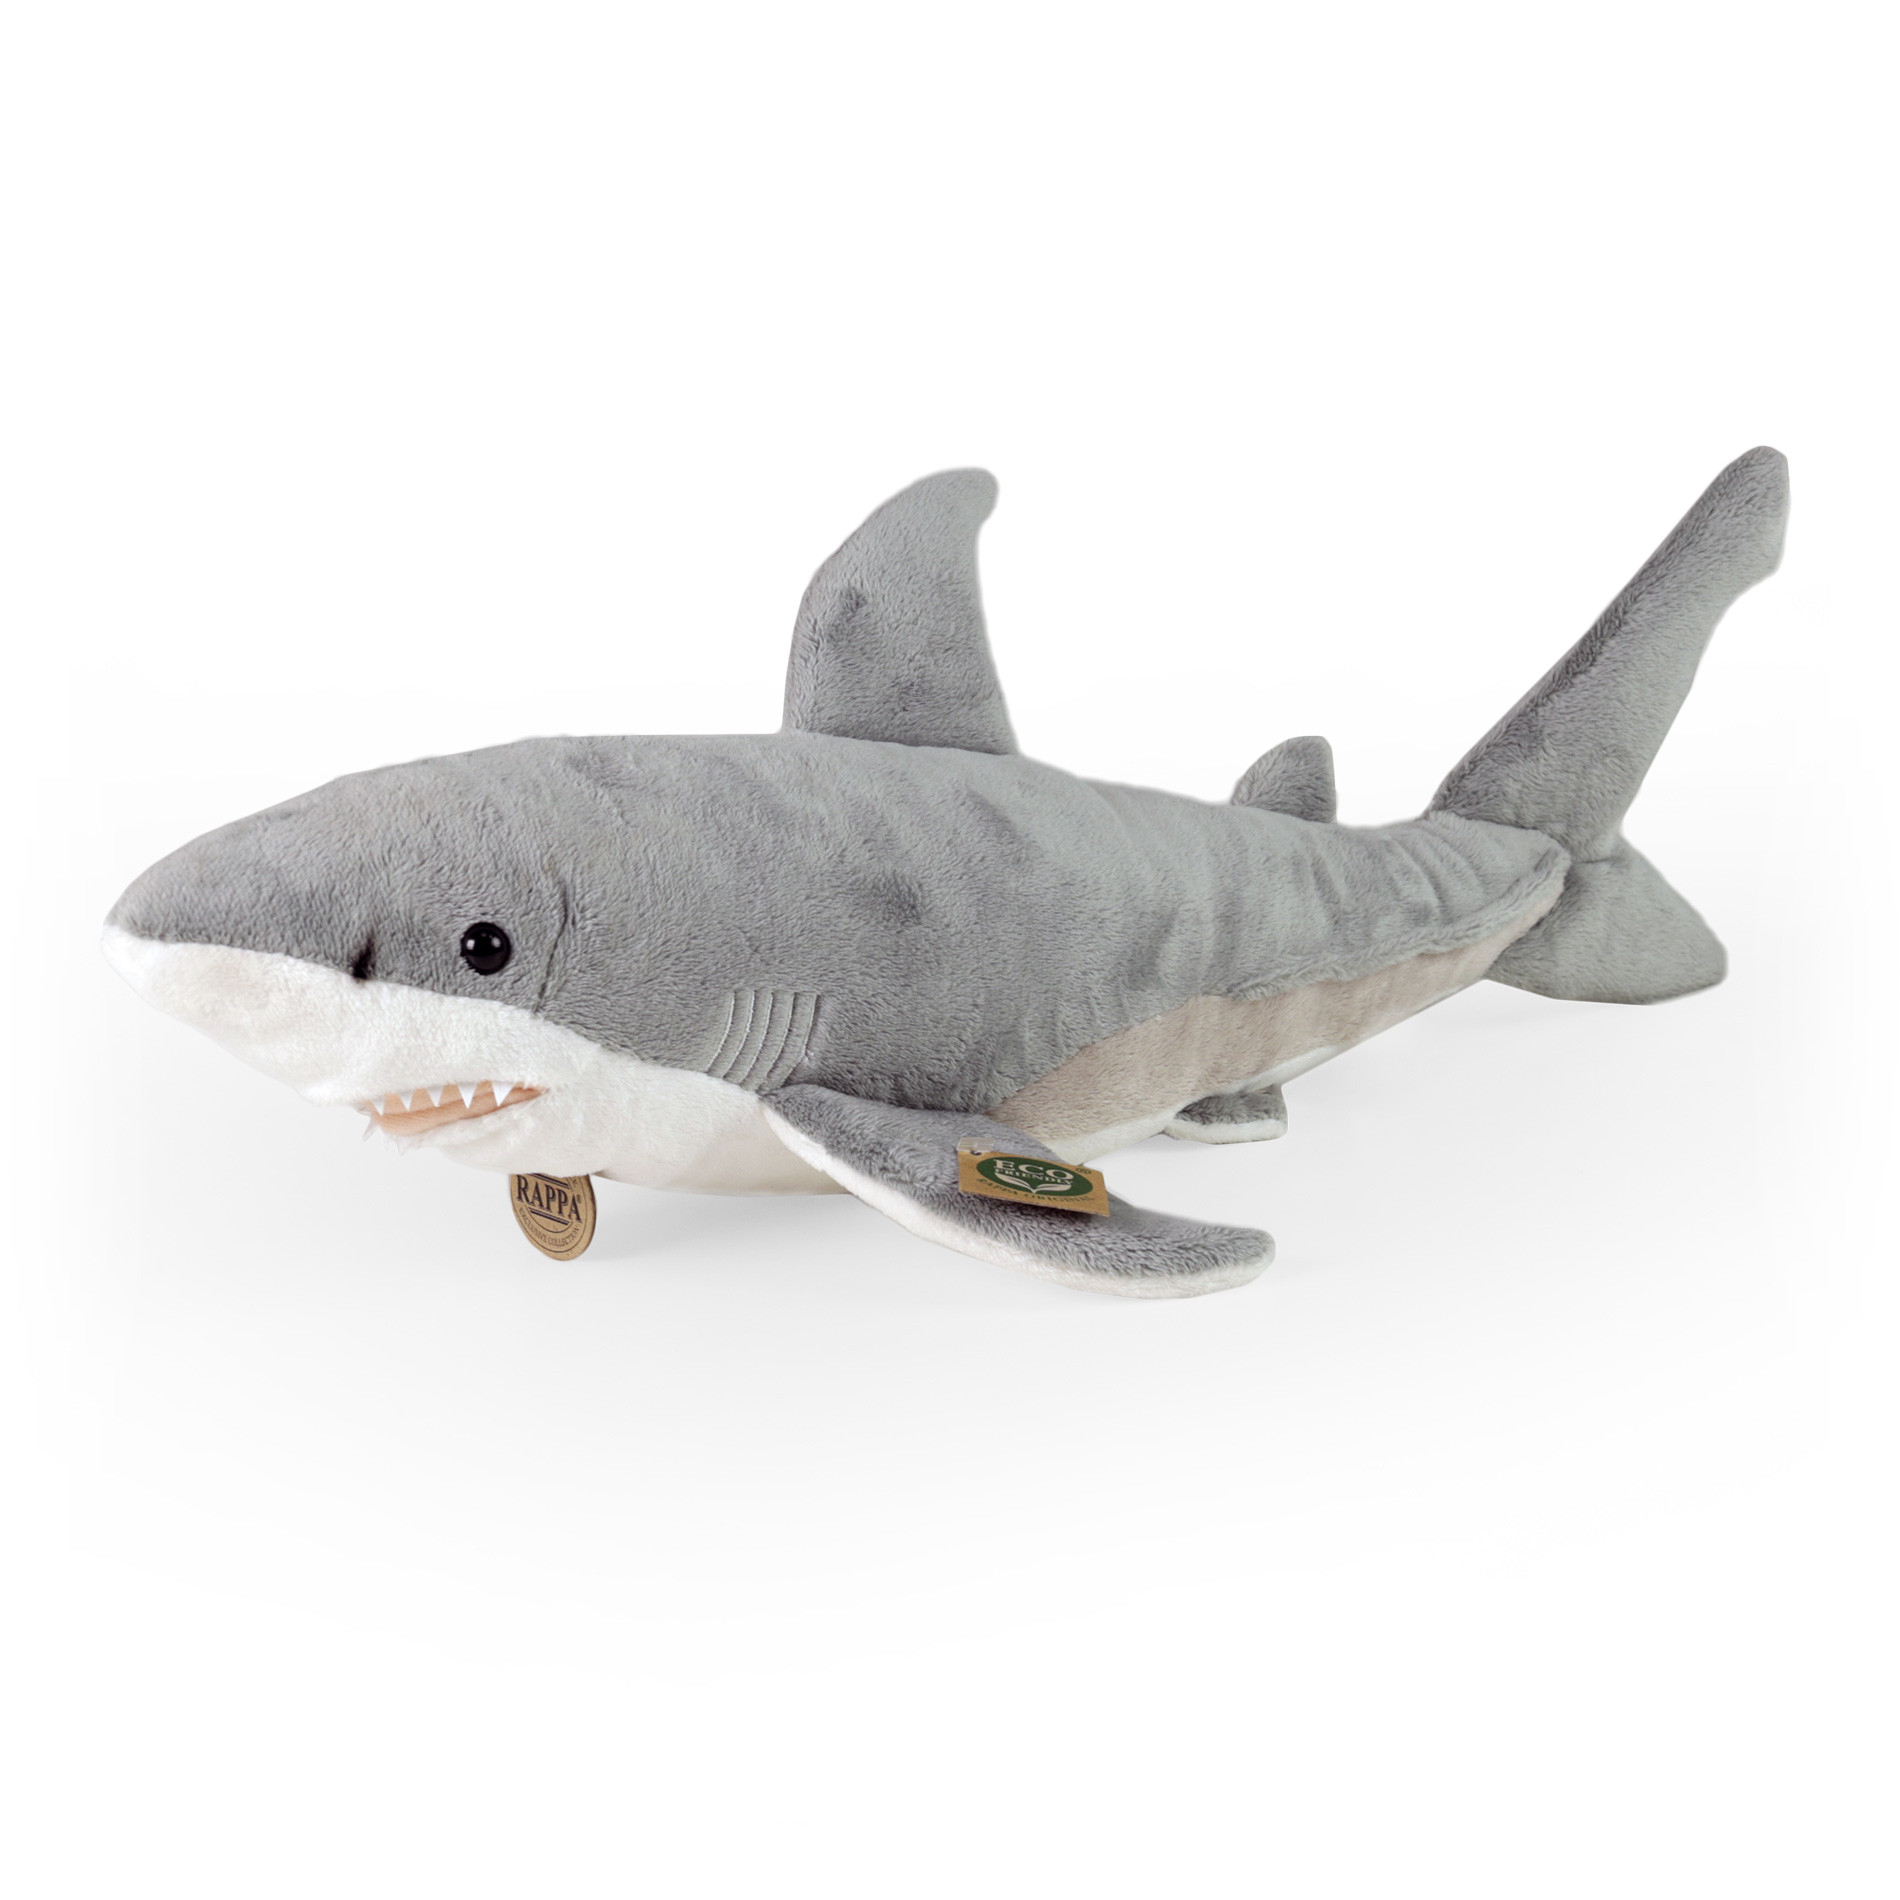 Plush white shark 51 cm ECO-FRIENDLY